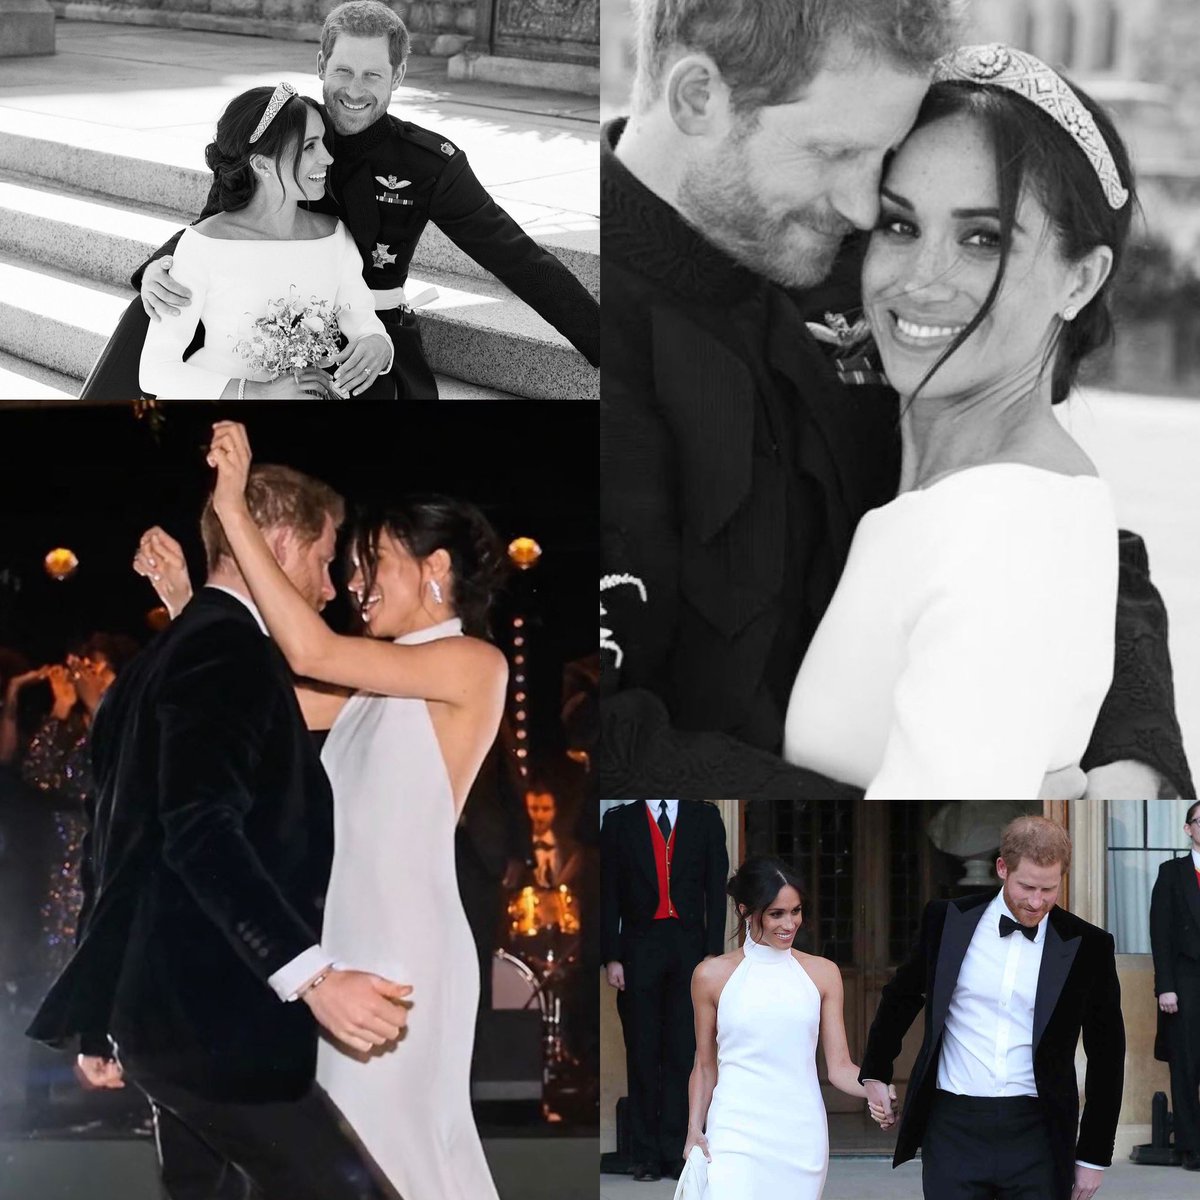 Happy 5th Wedding Anniversary 
Harry and Meghan, the Duke and Duchess of Sussex
💕💕💕

#HarryandMeghanAnniversary
#DukeandDuchessofSussex
#LoveWins
#WeLoveYouHarryAndMeghan